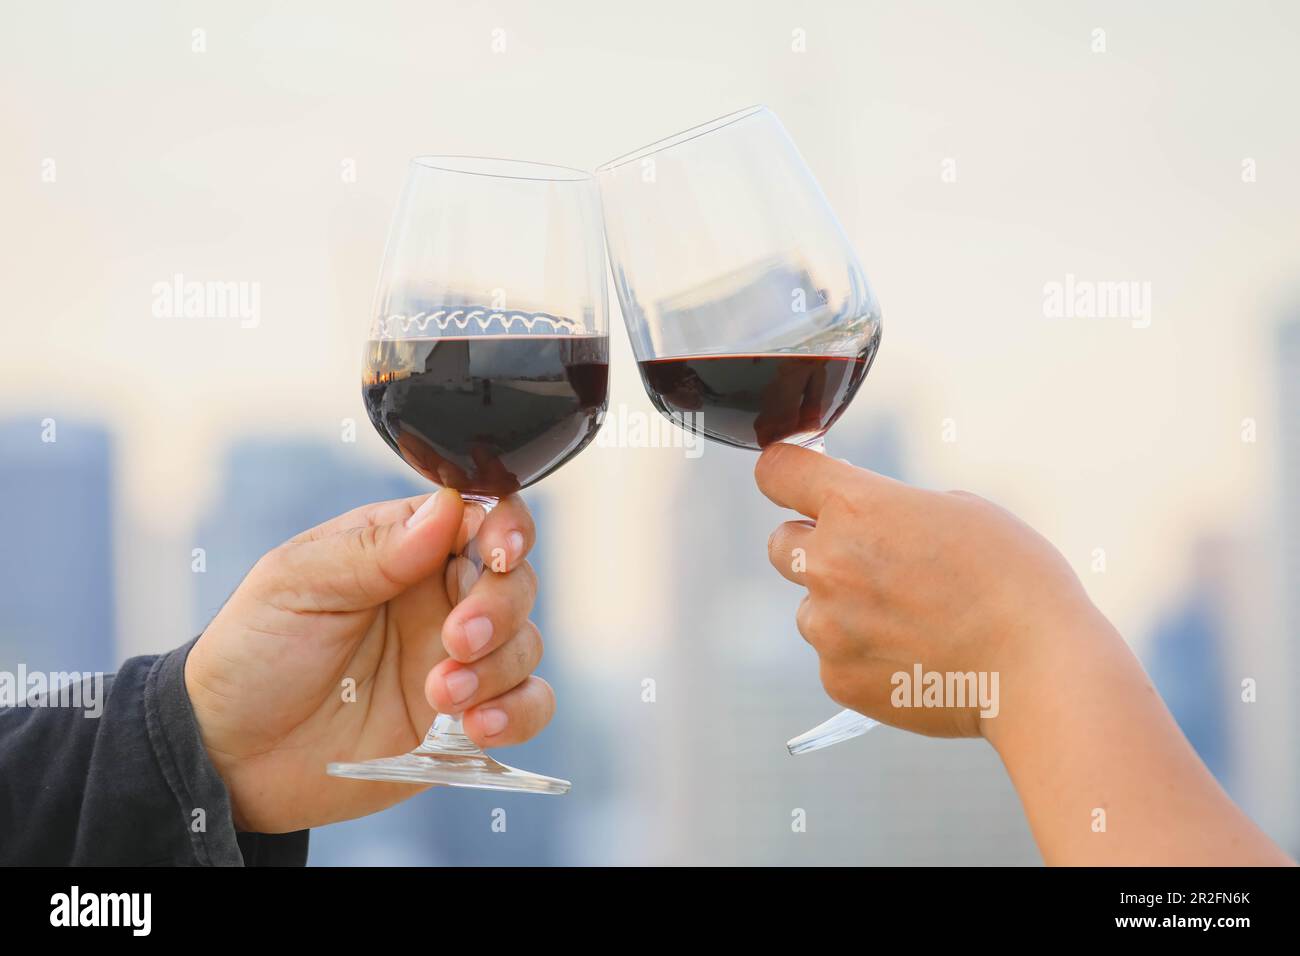 mani che tengono il bicchiere di vino rosso sul balcone durante il tramonto, concetto di celebrazione Foto Stock